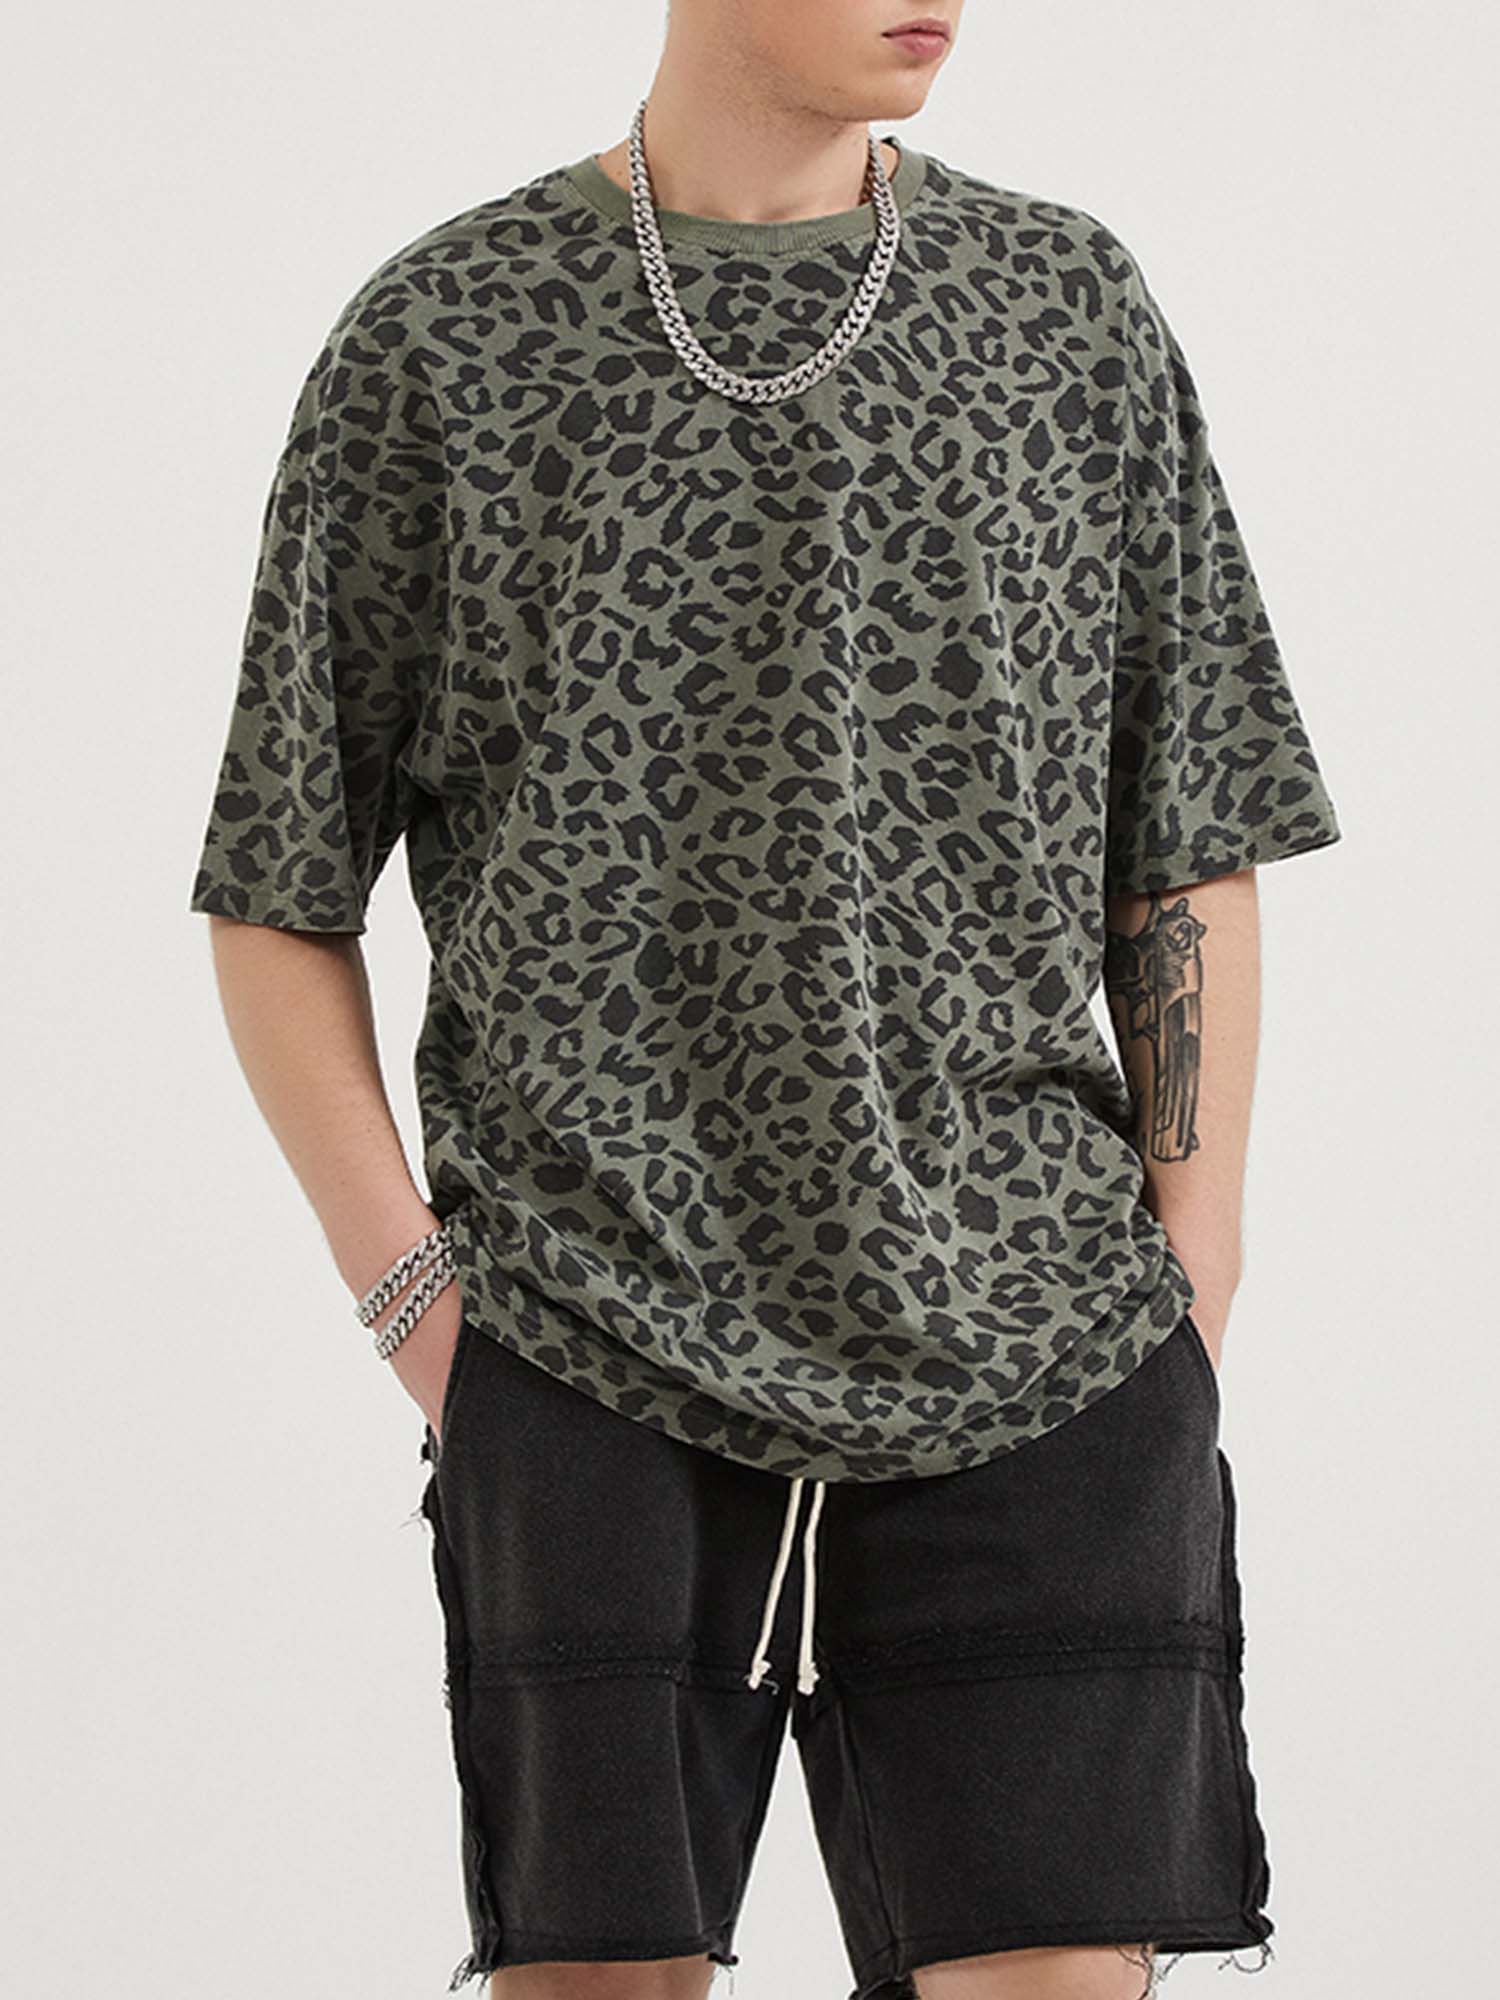 JUSTNOTAG T-shirt a maniche corte in 100% cotone con stampa leopardata grigio scuro